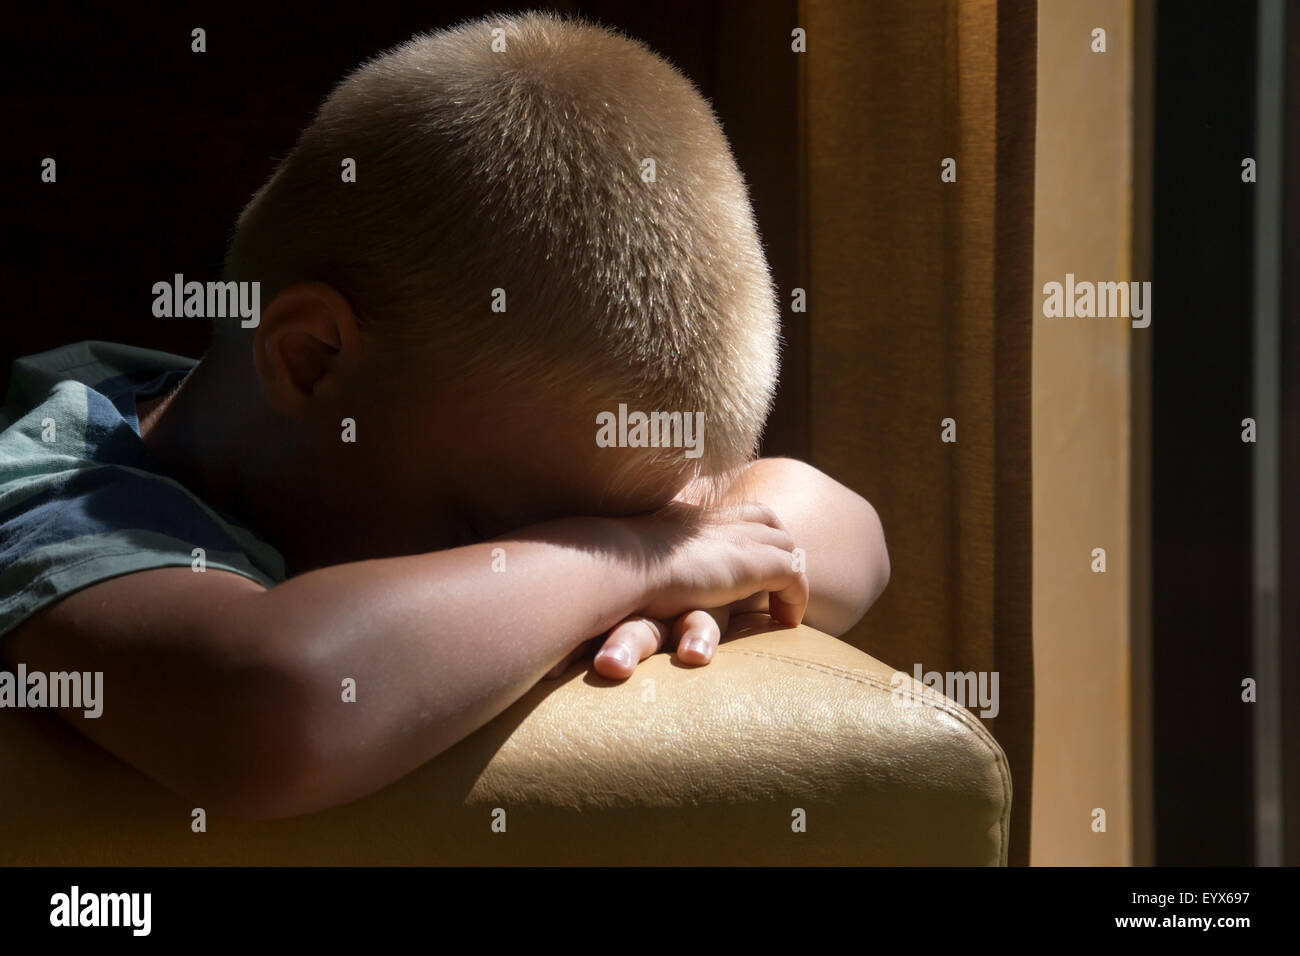 Kind (junge) in der Nähe eines Fensters depressiv traurig aufgeregt warten langweilig Stockfoto